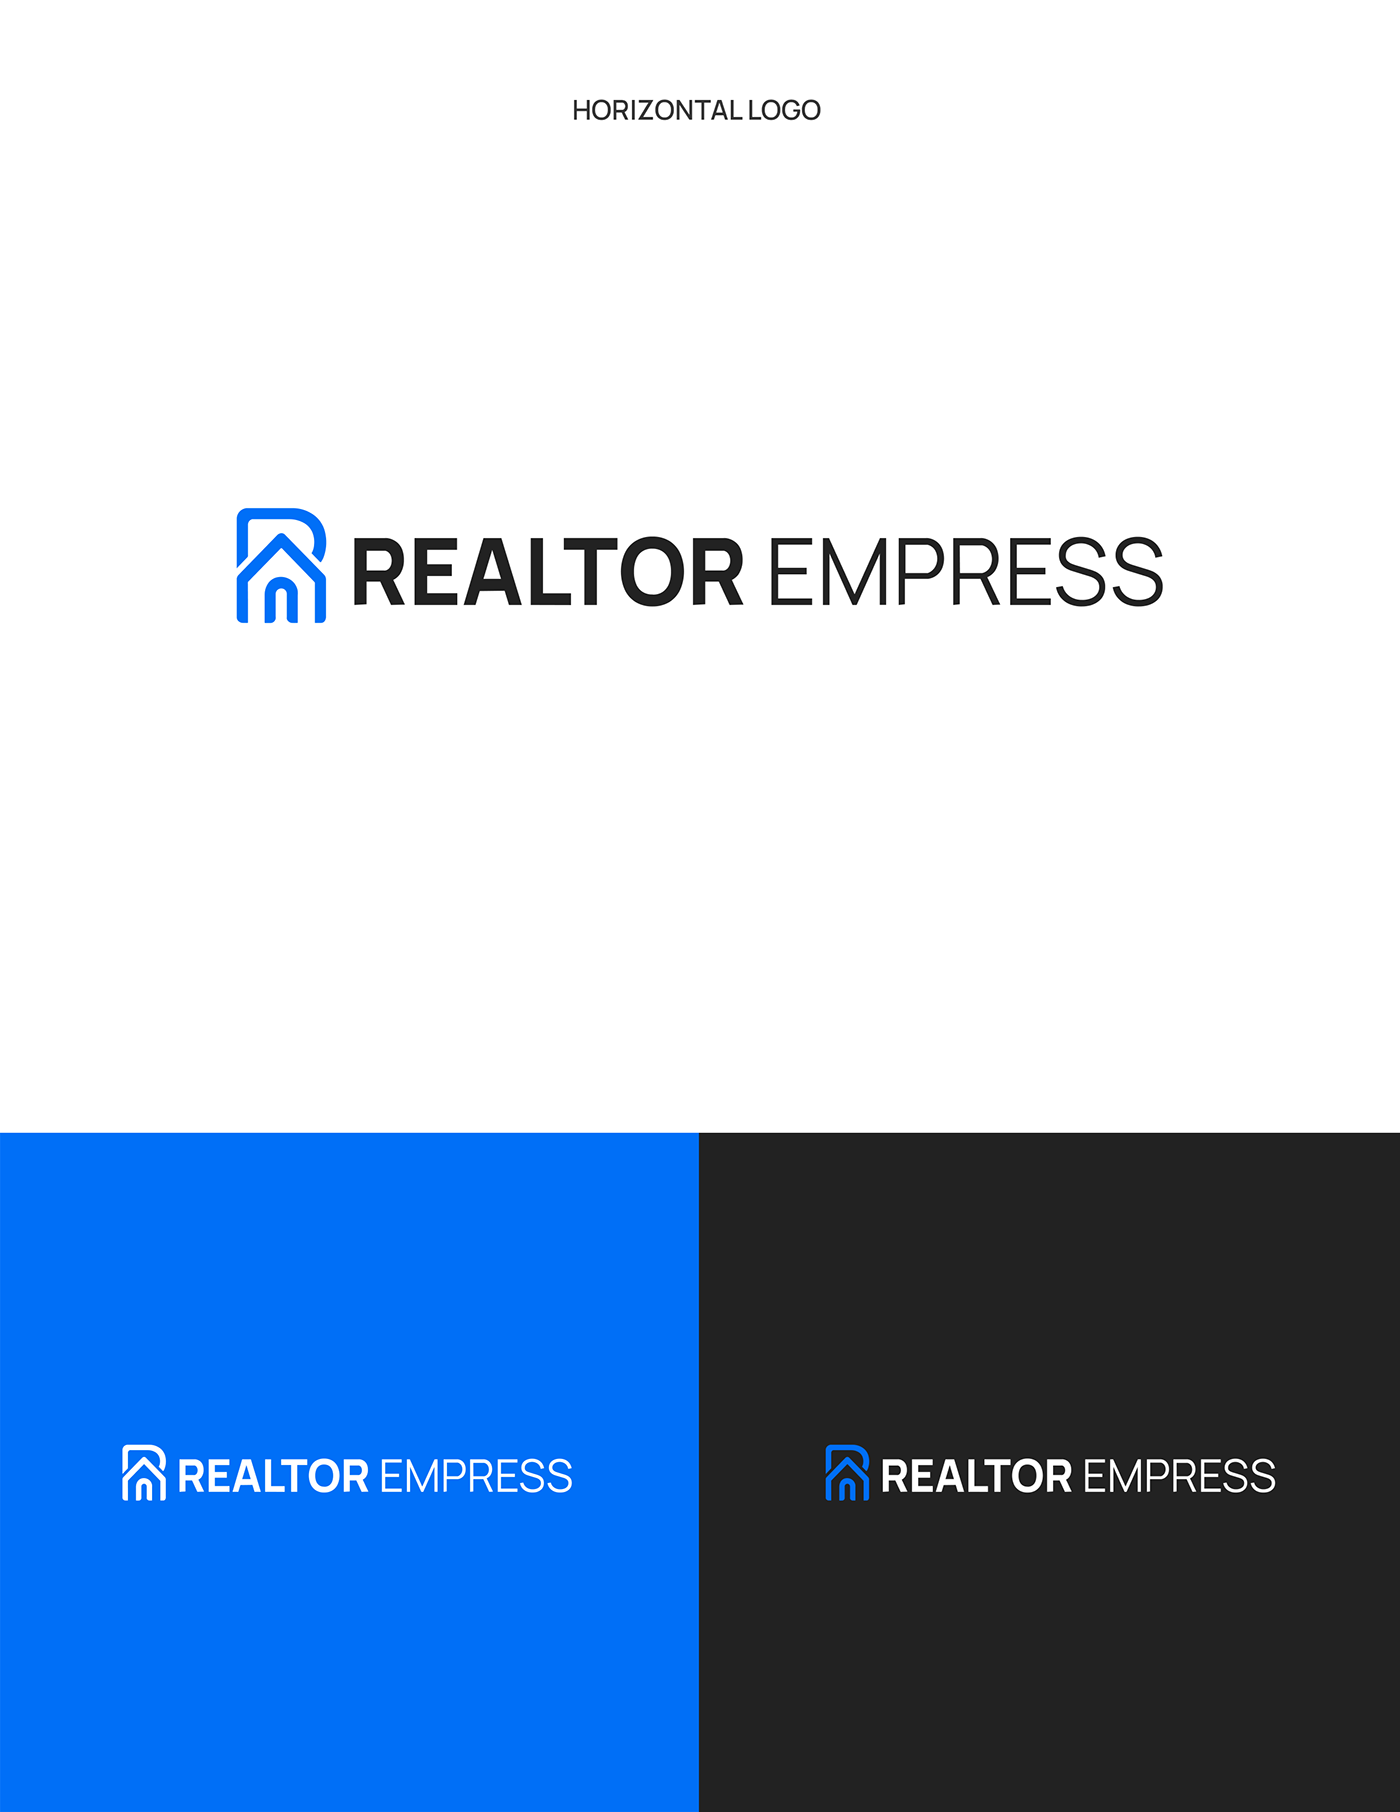 Real estate logo logo brand identity Logo Design adobe illustrator vector visual identity identity brand